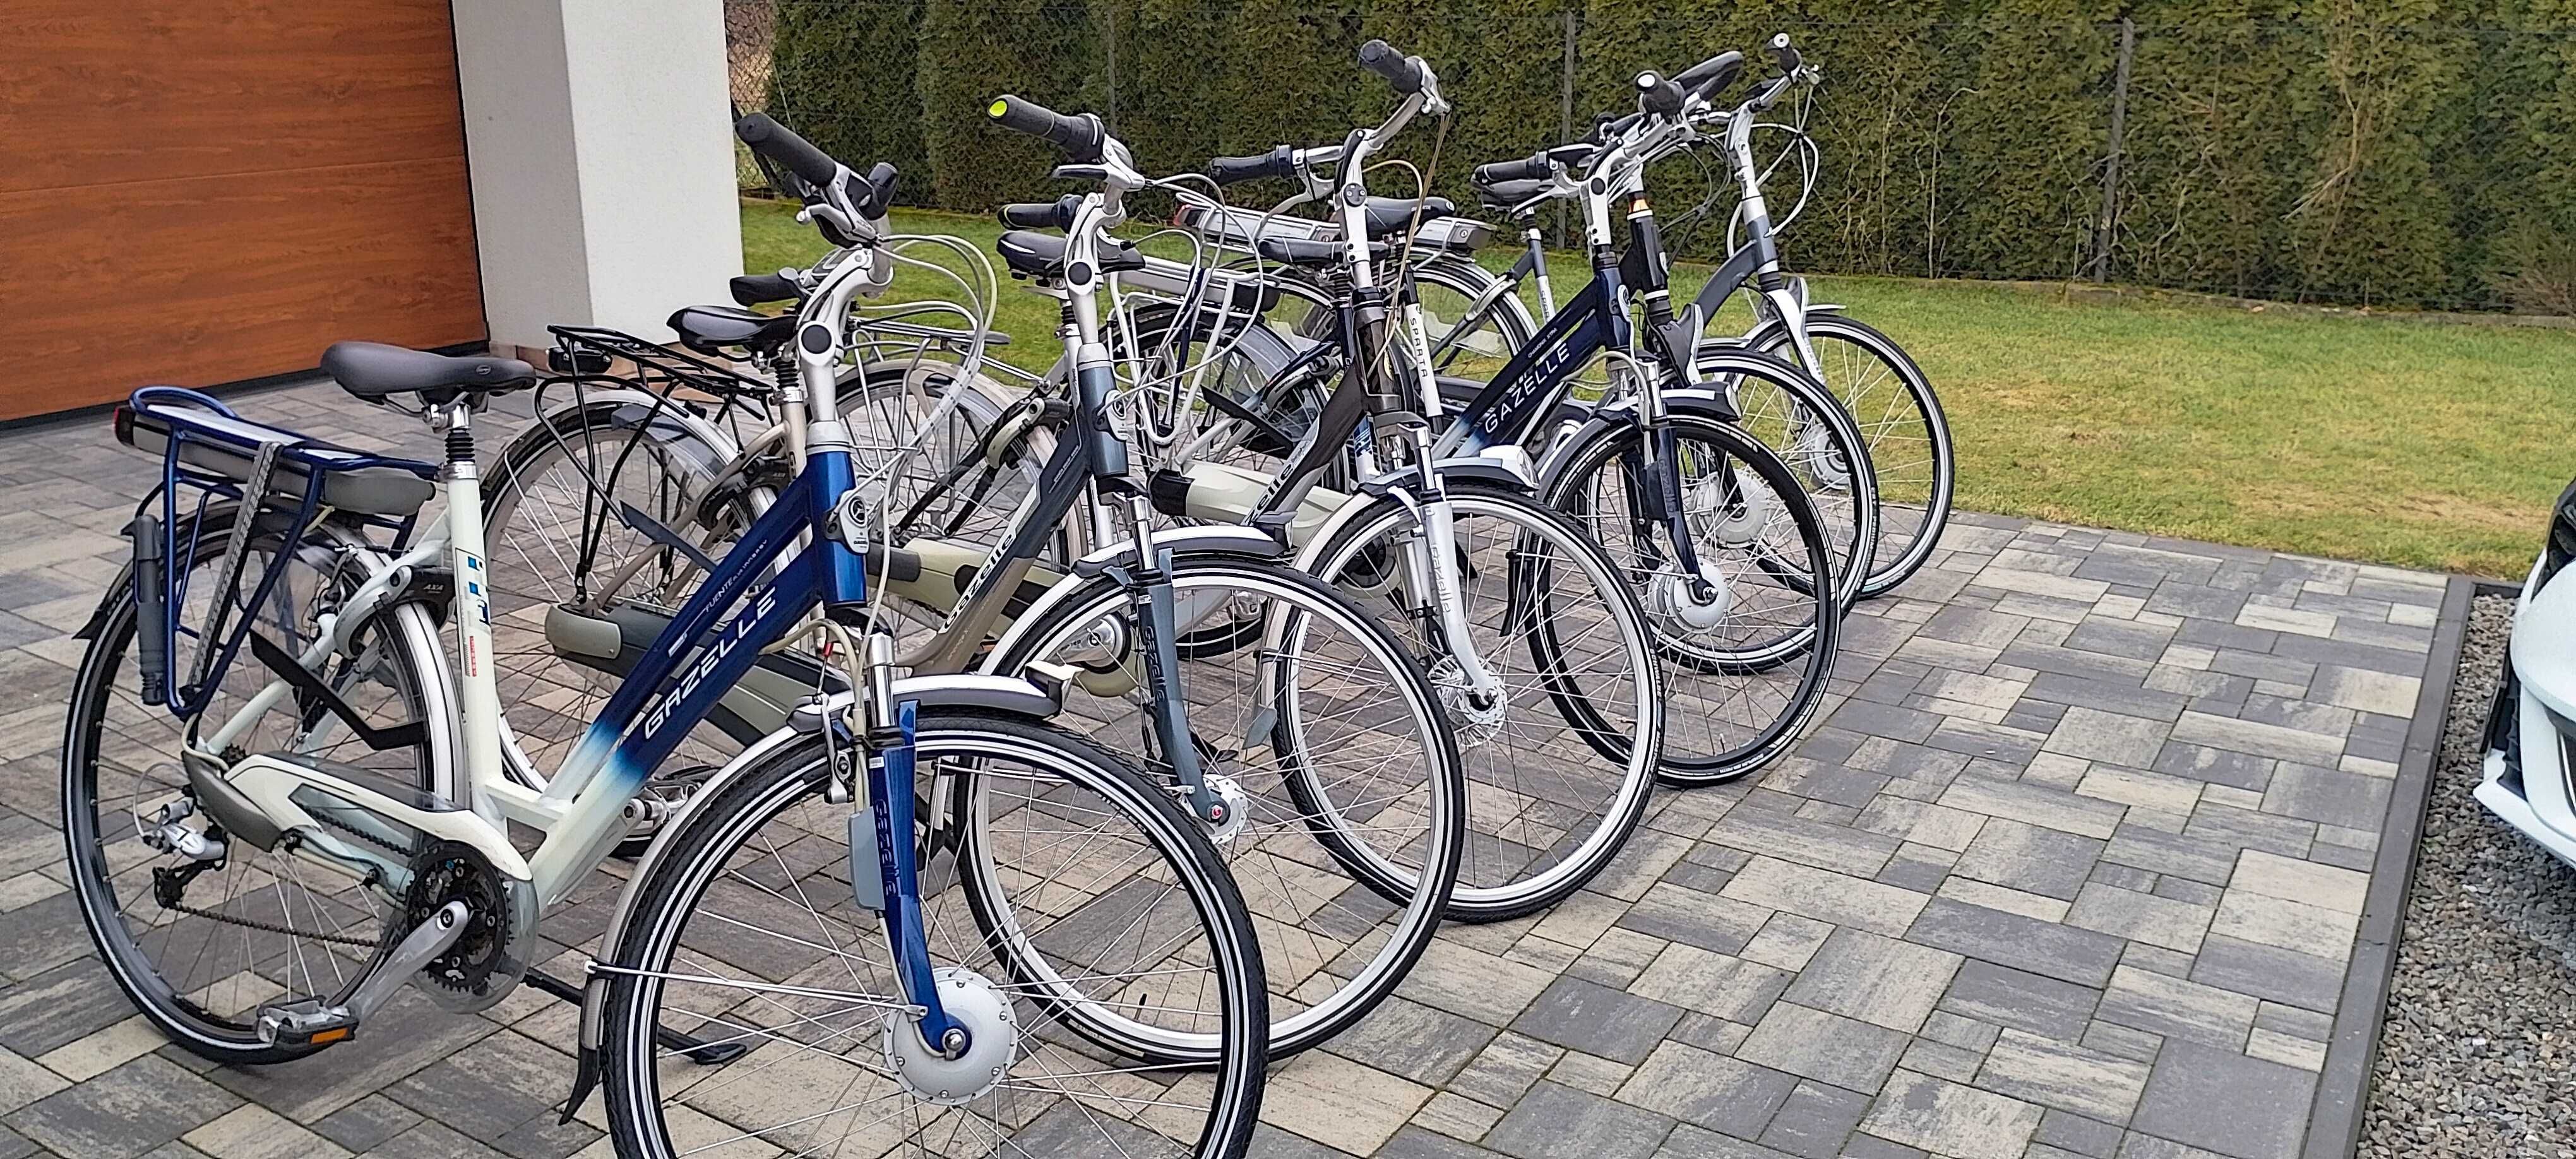 rowery z Holandii Gazelle Sparta Trek elektryczne i zwykłe duży wybór